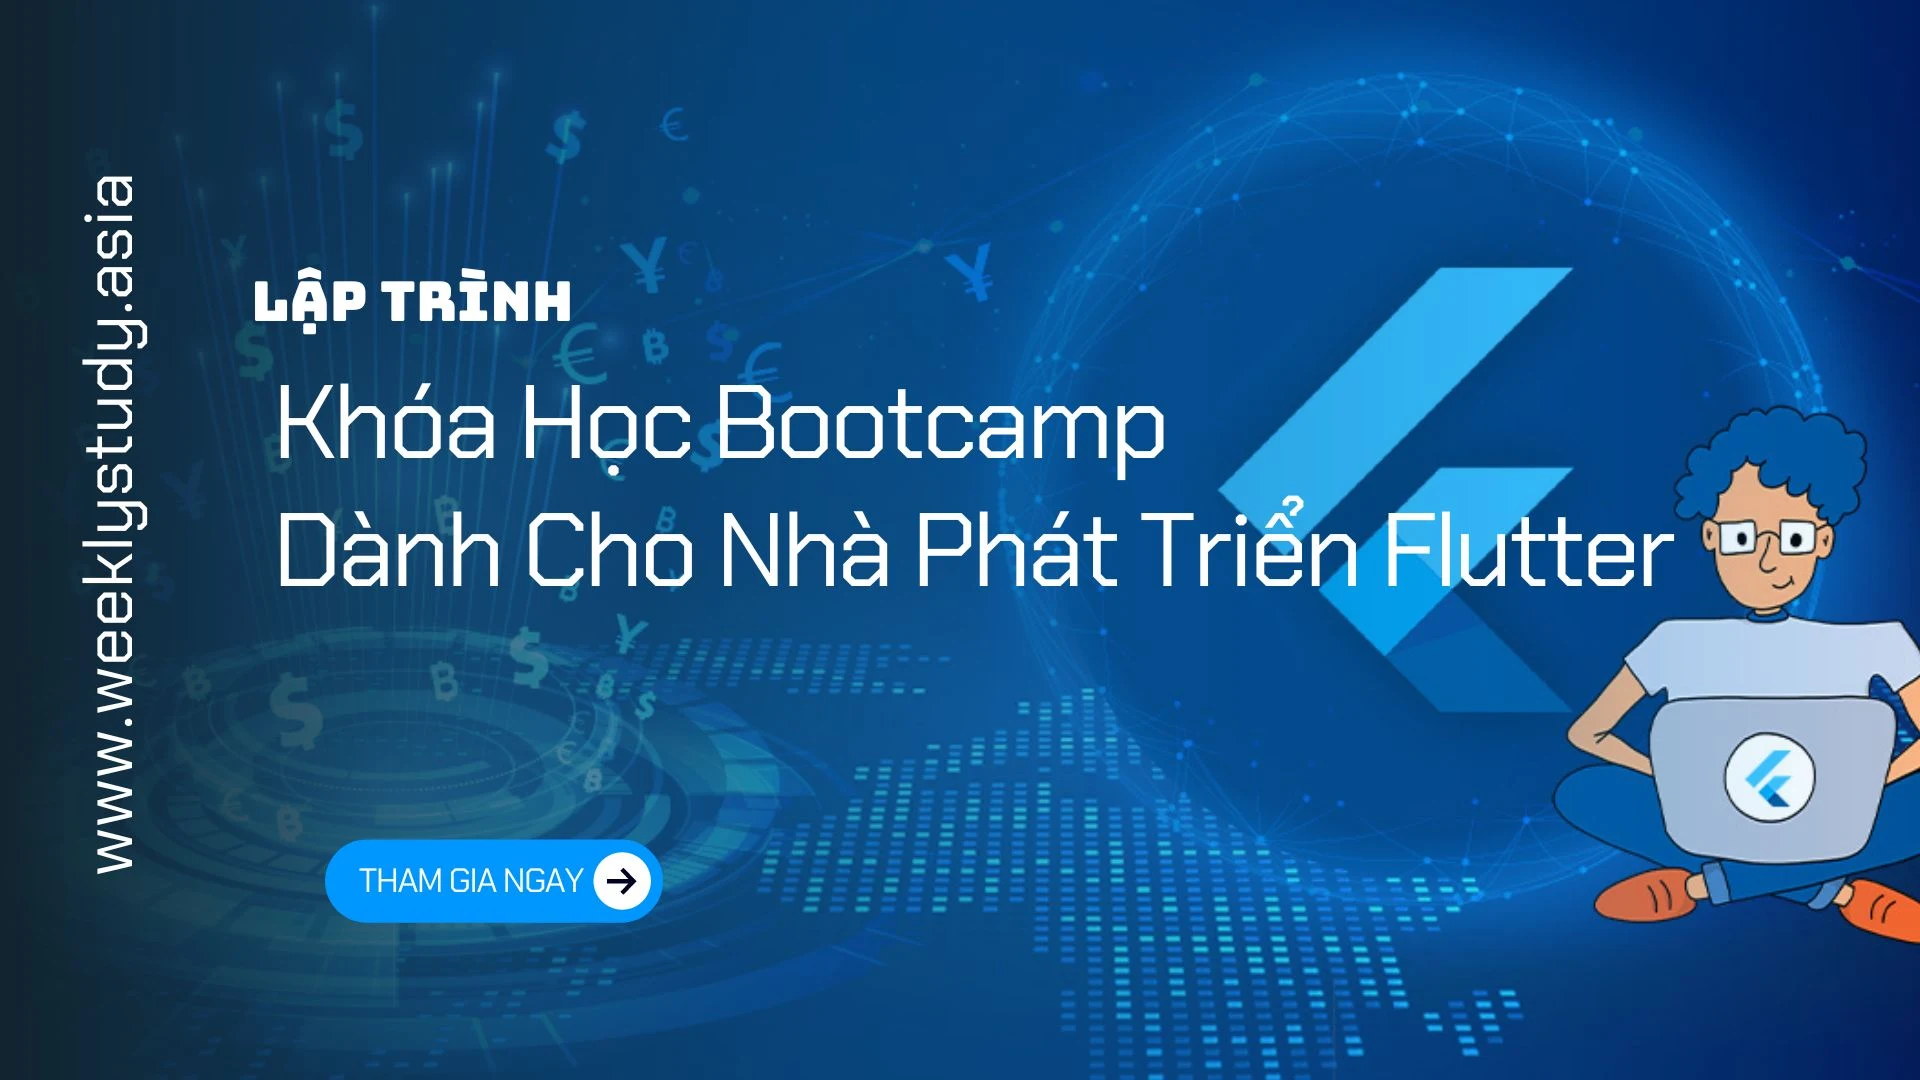 gioi-thieu-khoa-hoc-bootcamp-danh-cho-nha-phat-trien-flutter-ma-7591a